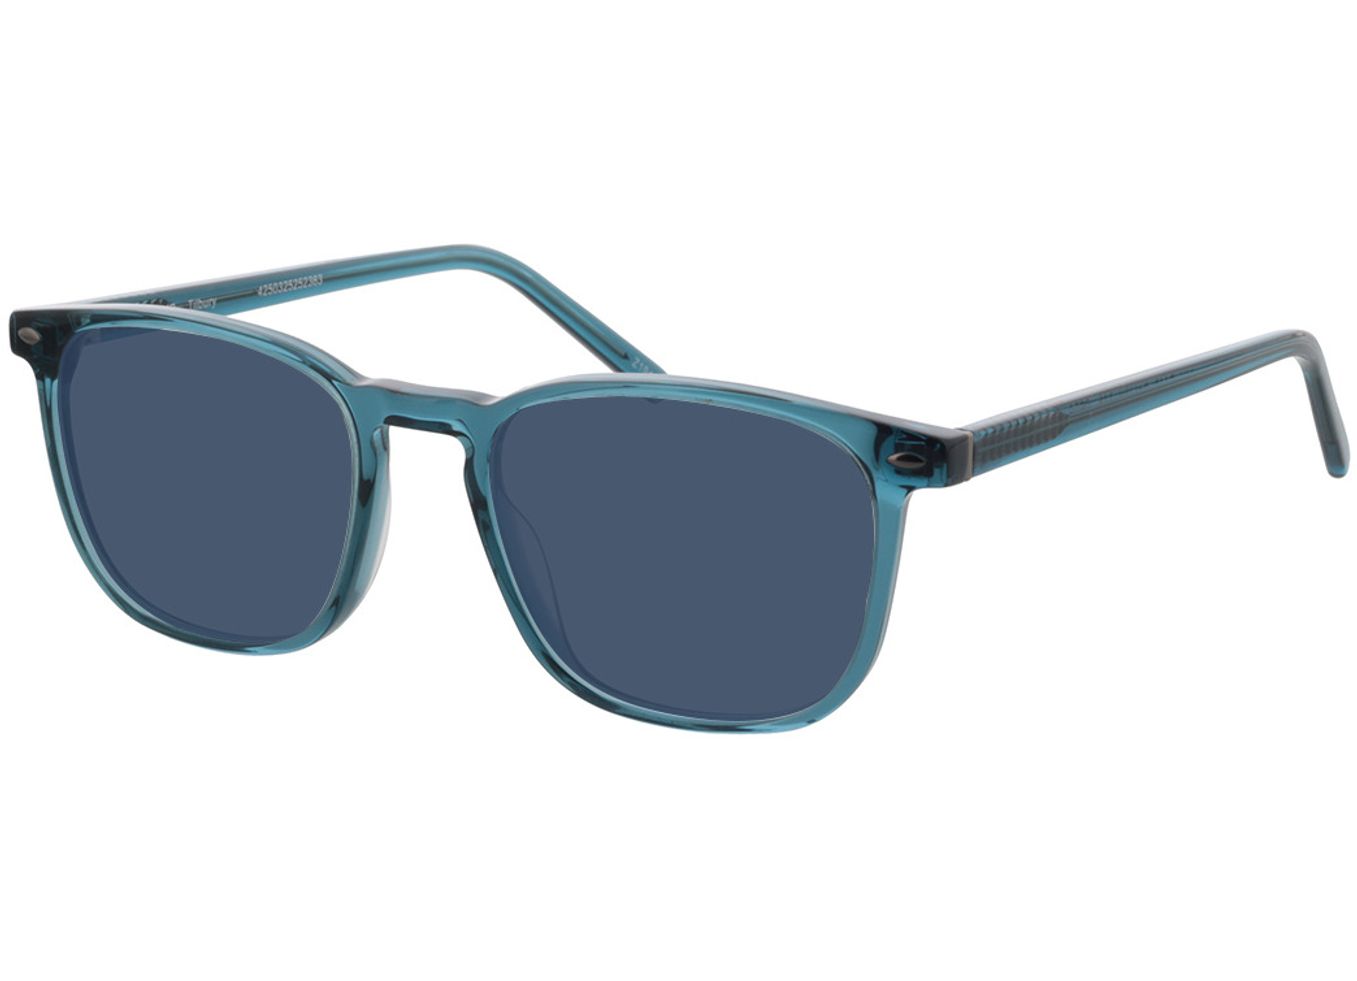 Tilbury - blau Sonnenbrille mit Sehstärke, Vollrand, Eckig von Brille24 Collection